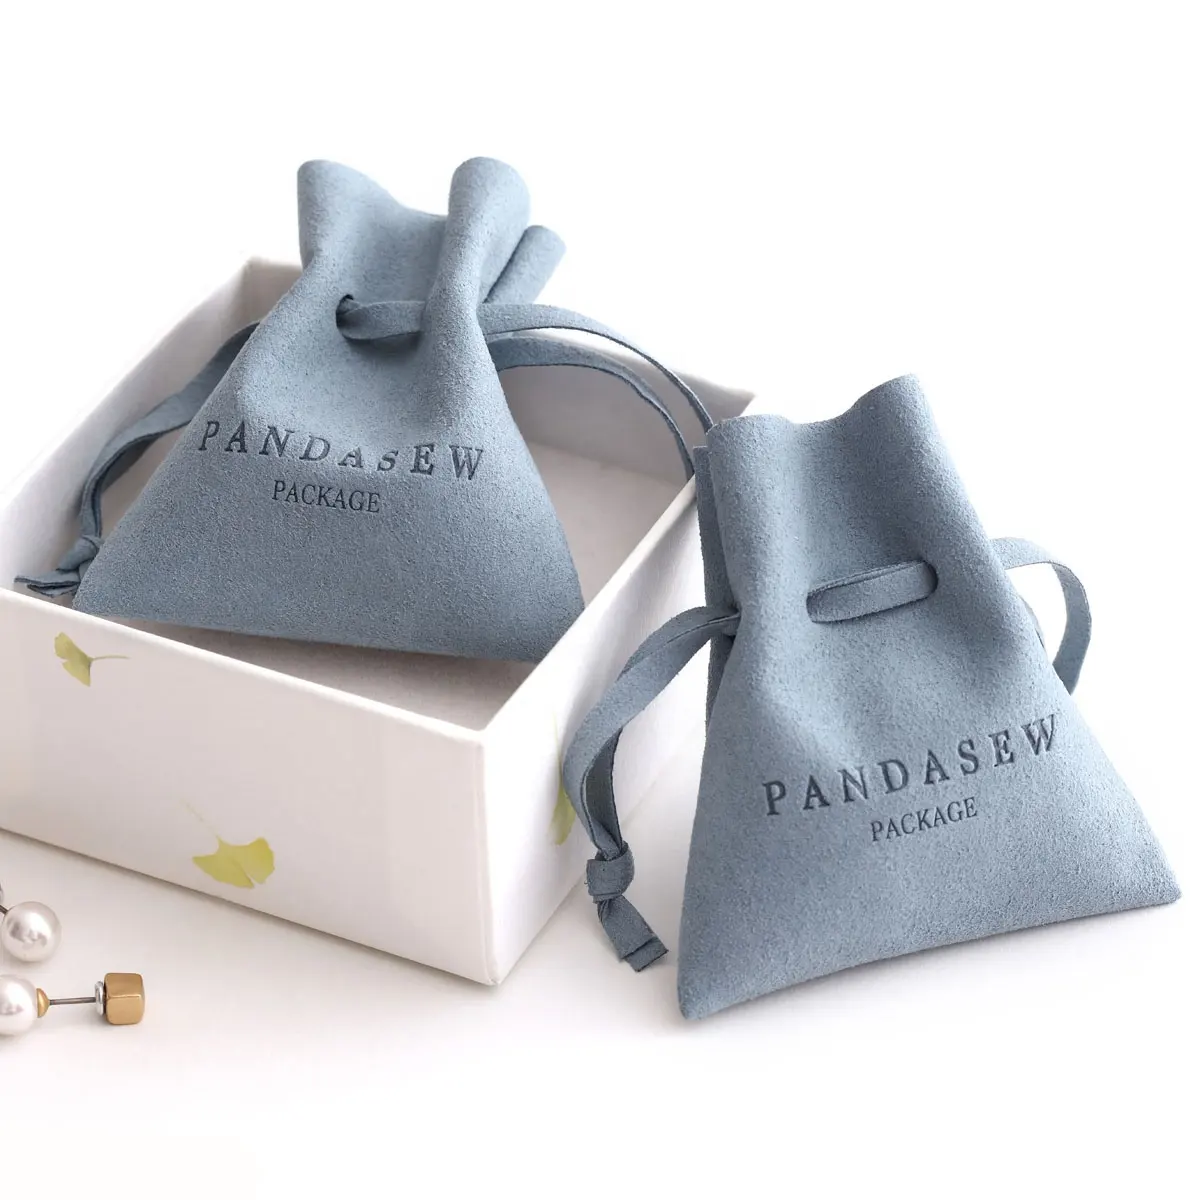 PandaSew personalizado logotipo de la marca Deboss impreso de gamuza de microfibra bolsa de la joyería